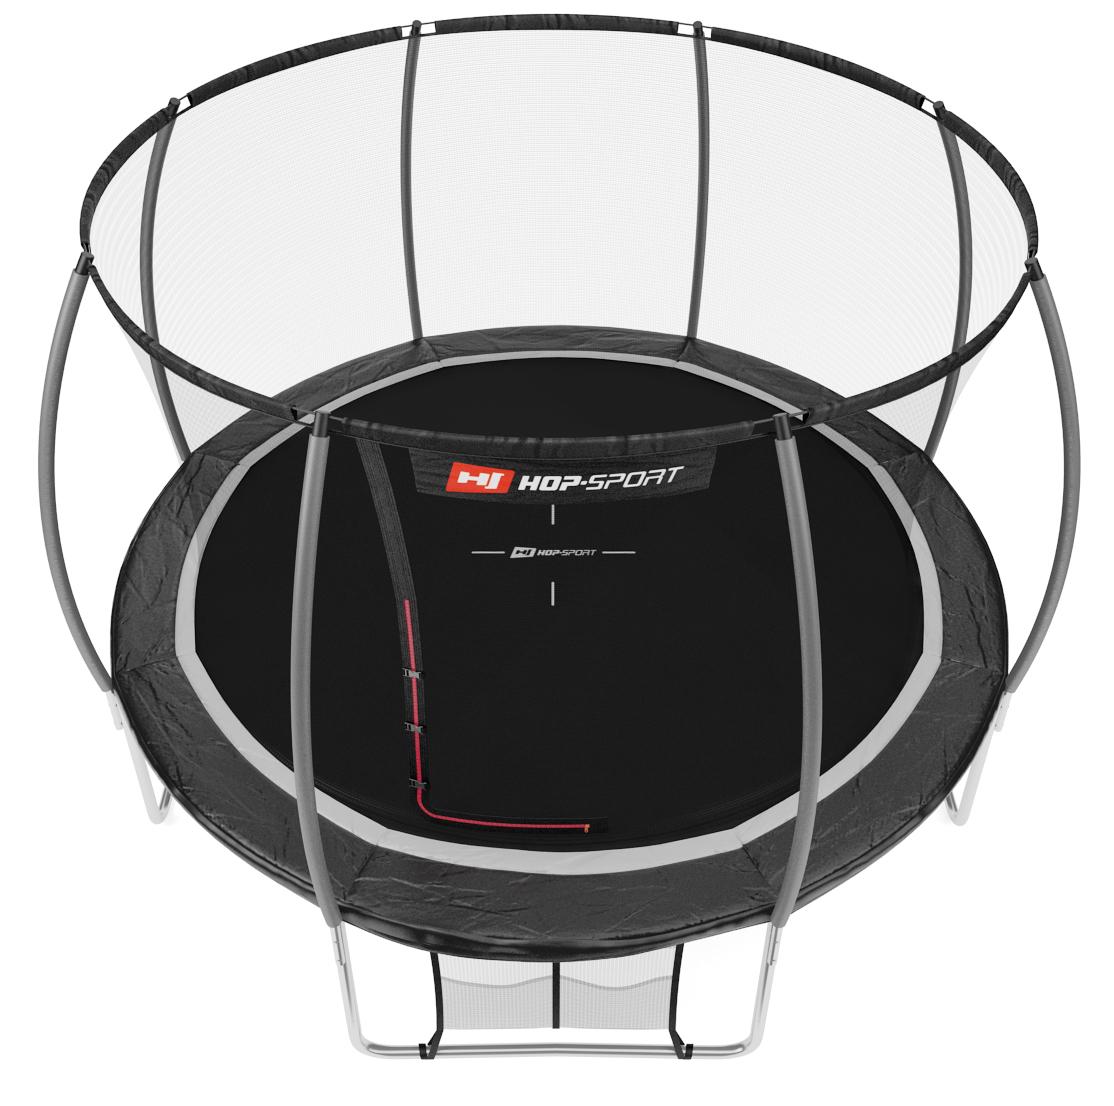 Батут Hop-Sport Premium 12ft (366 см) з внутрішньою сіткою Чорно-сірий - фото 2